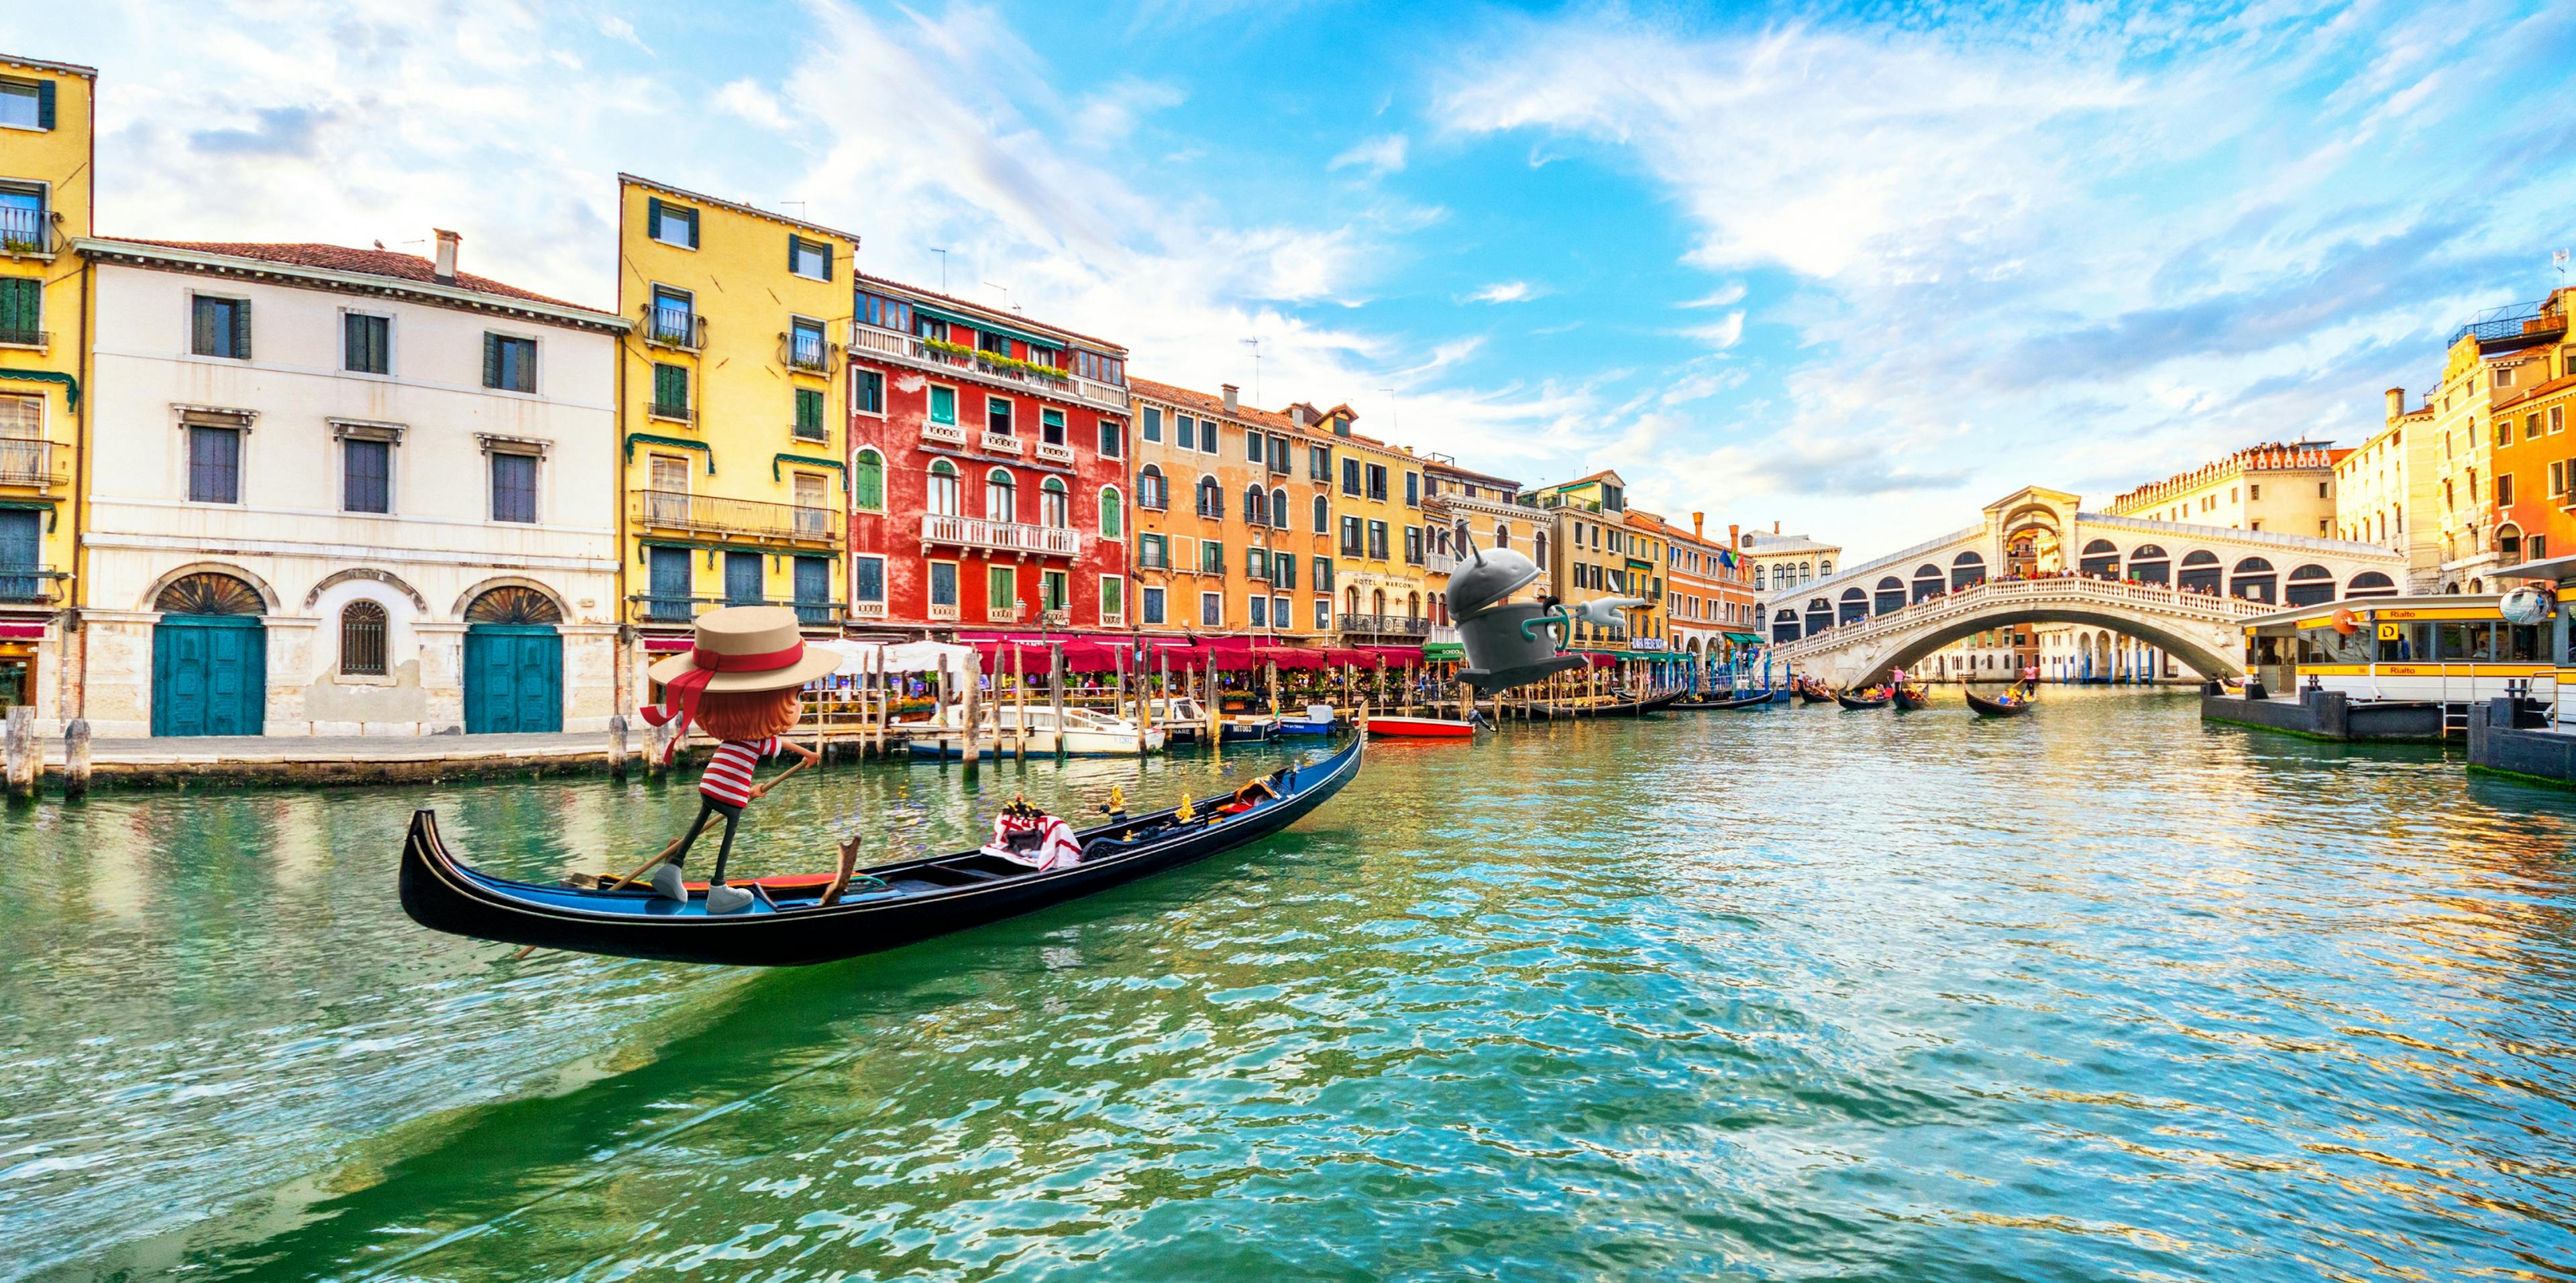 Oskar fährt als Gondoliere eine Gondel durch den Canal Grande in Venedig. Im Hintergrund ist die Rialtobrücke zu sehen, auf die Bo zeigt. © goodmatters